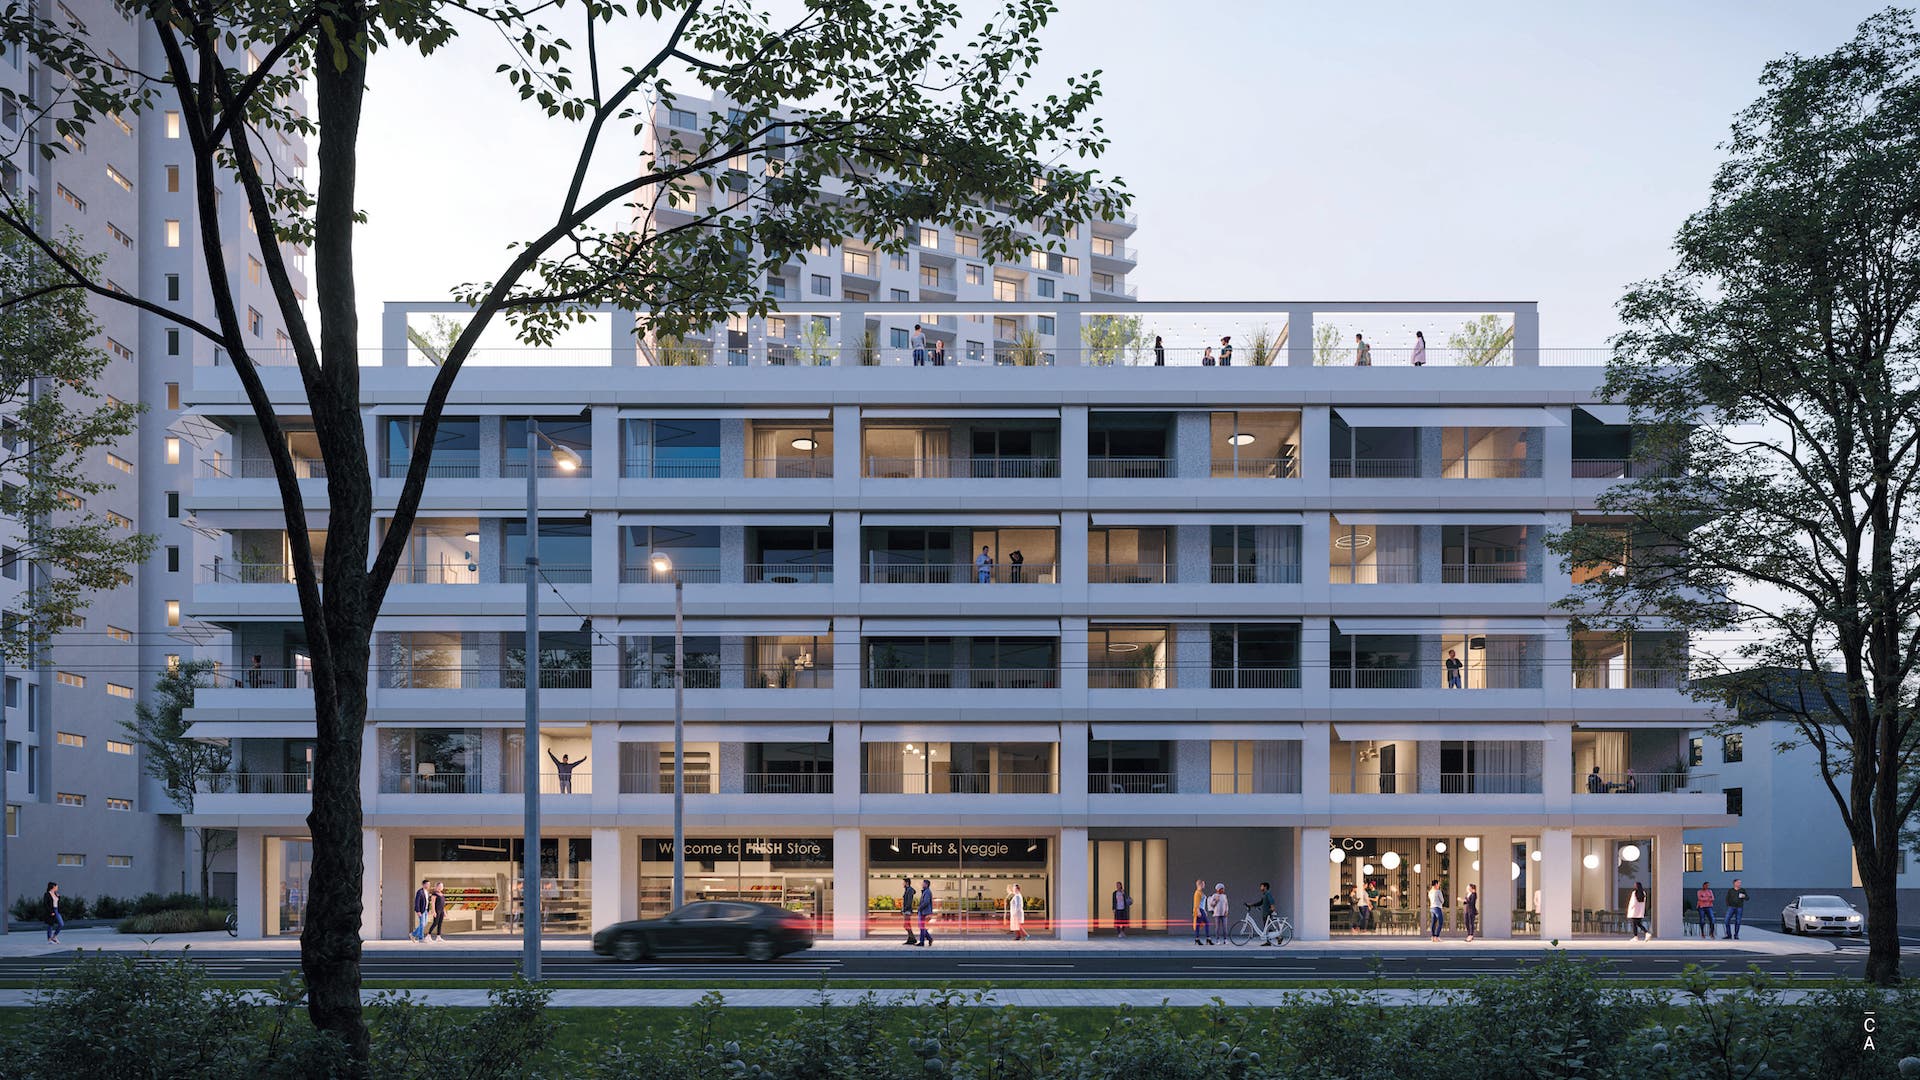 Projekt Kvarter - finálna architektonická podoba domu. V pozadí vidieť výškové budovy developmentu Jégeho Alej